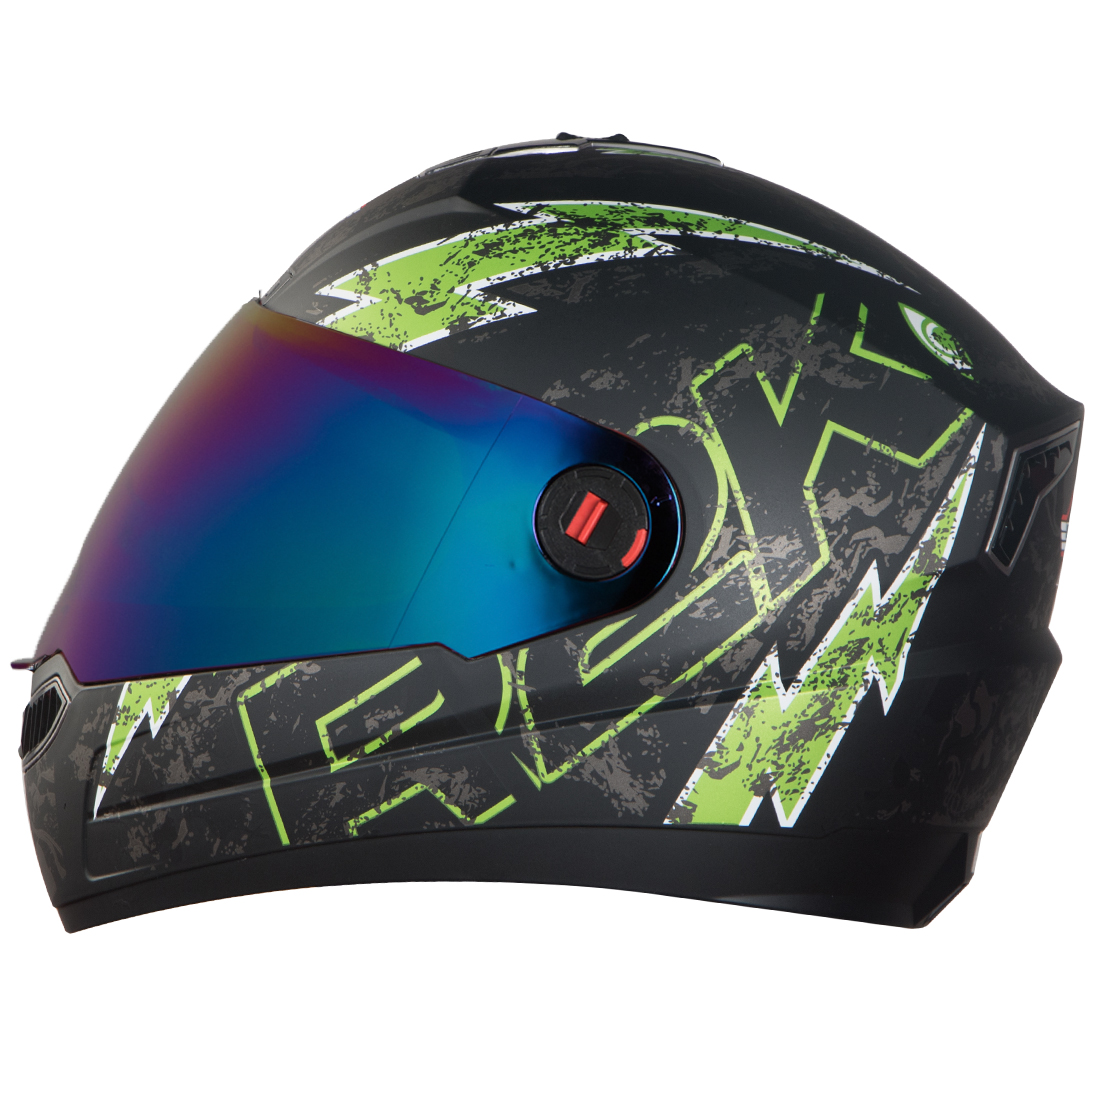 Steelbird SBA-1 R2K Live Full Face Helmet in Matt Finish (Matt Black Green with Chrome Rainbow Visor)